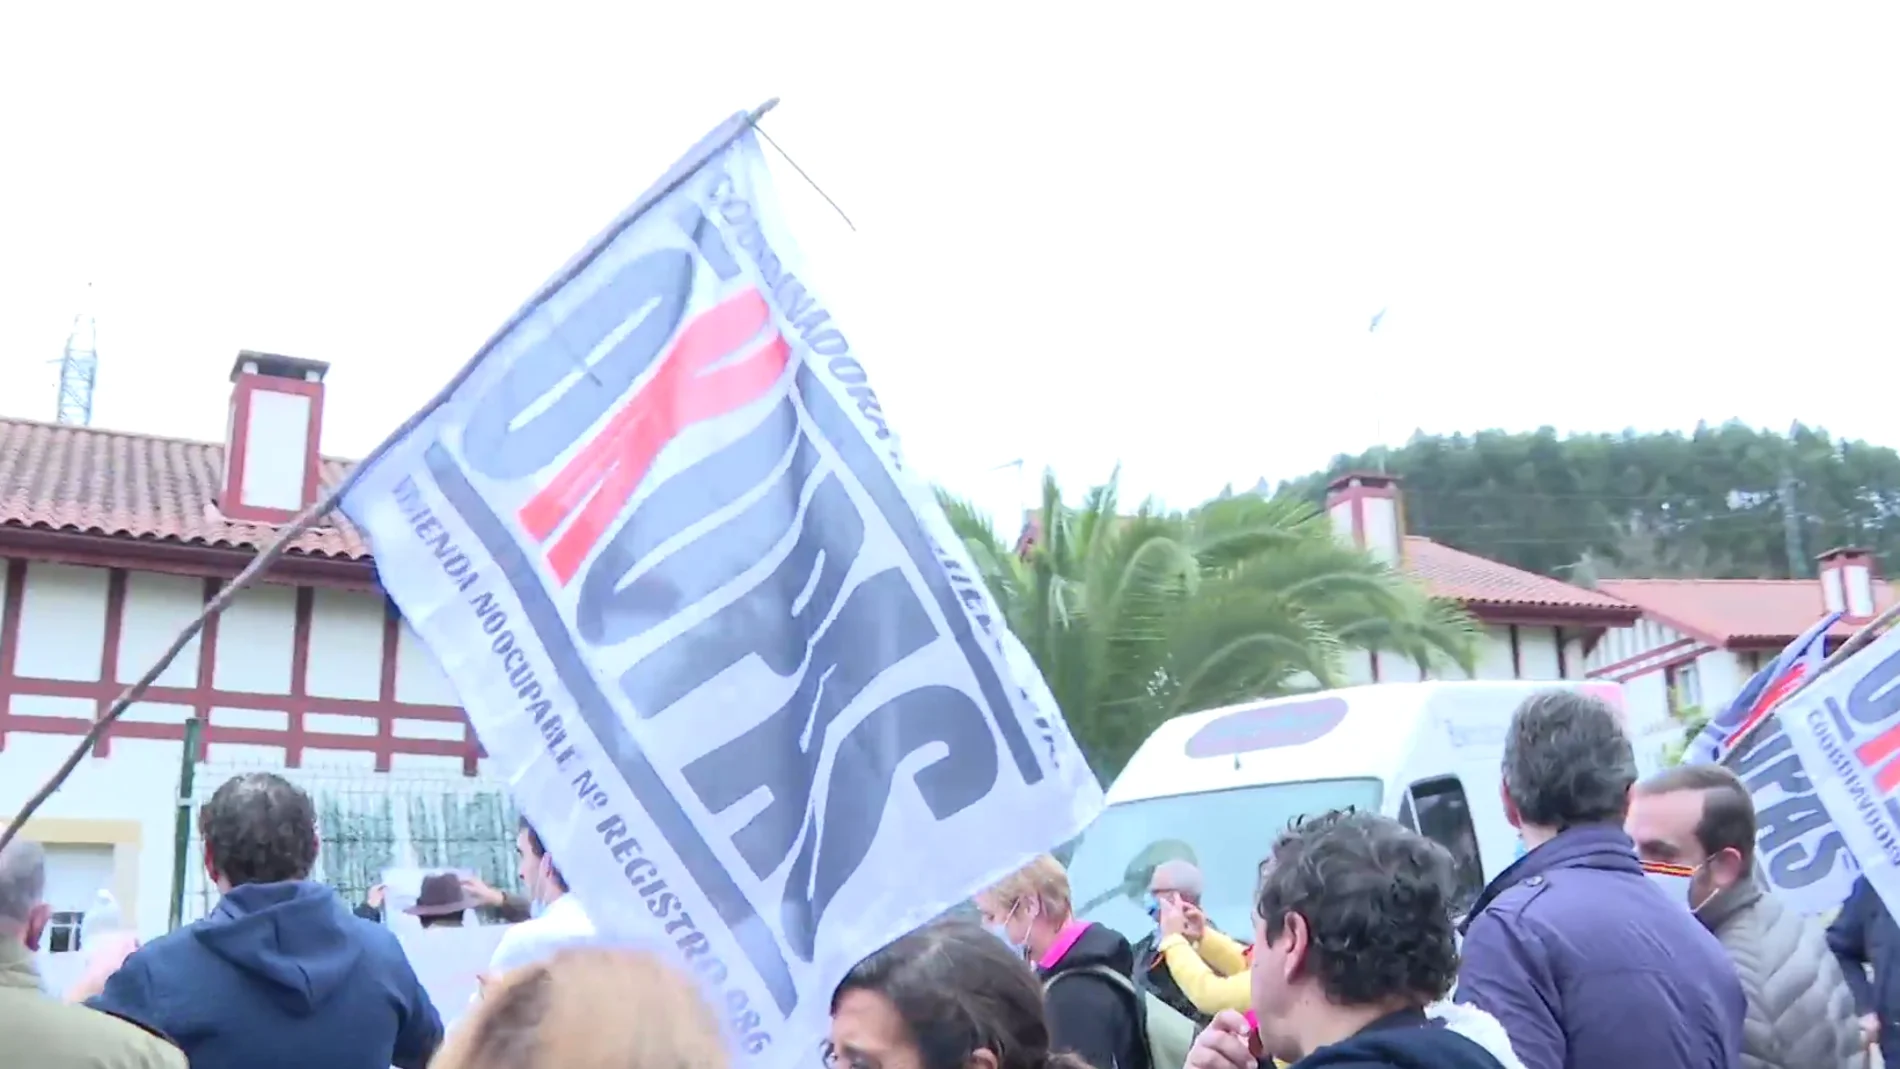 Más de 100 vecinos se manifiestan y piden que se actúe contra una veintena de okupas en Meruelo, Cantabria